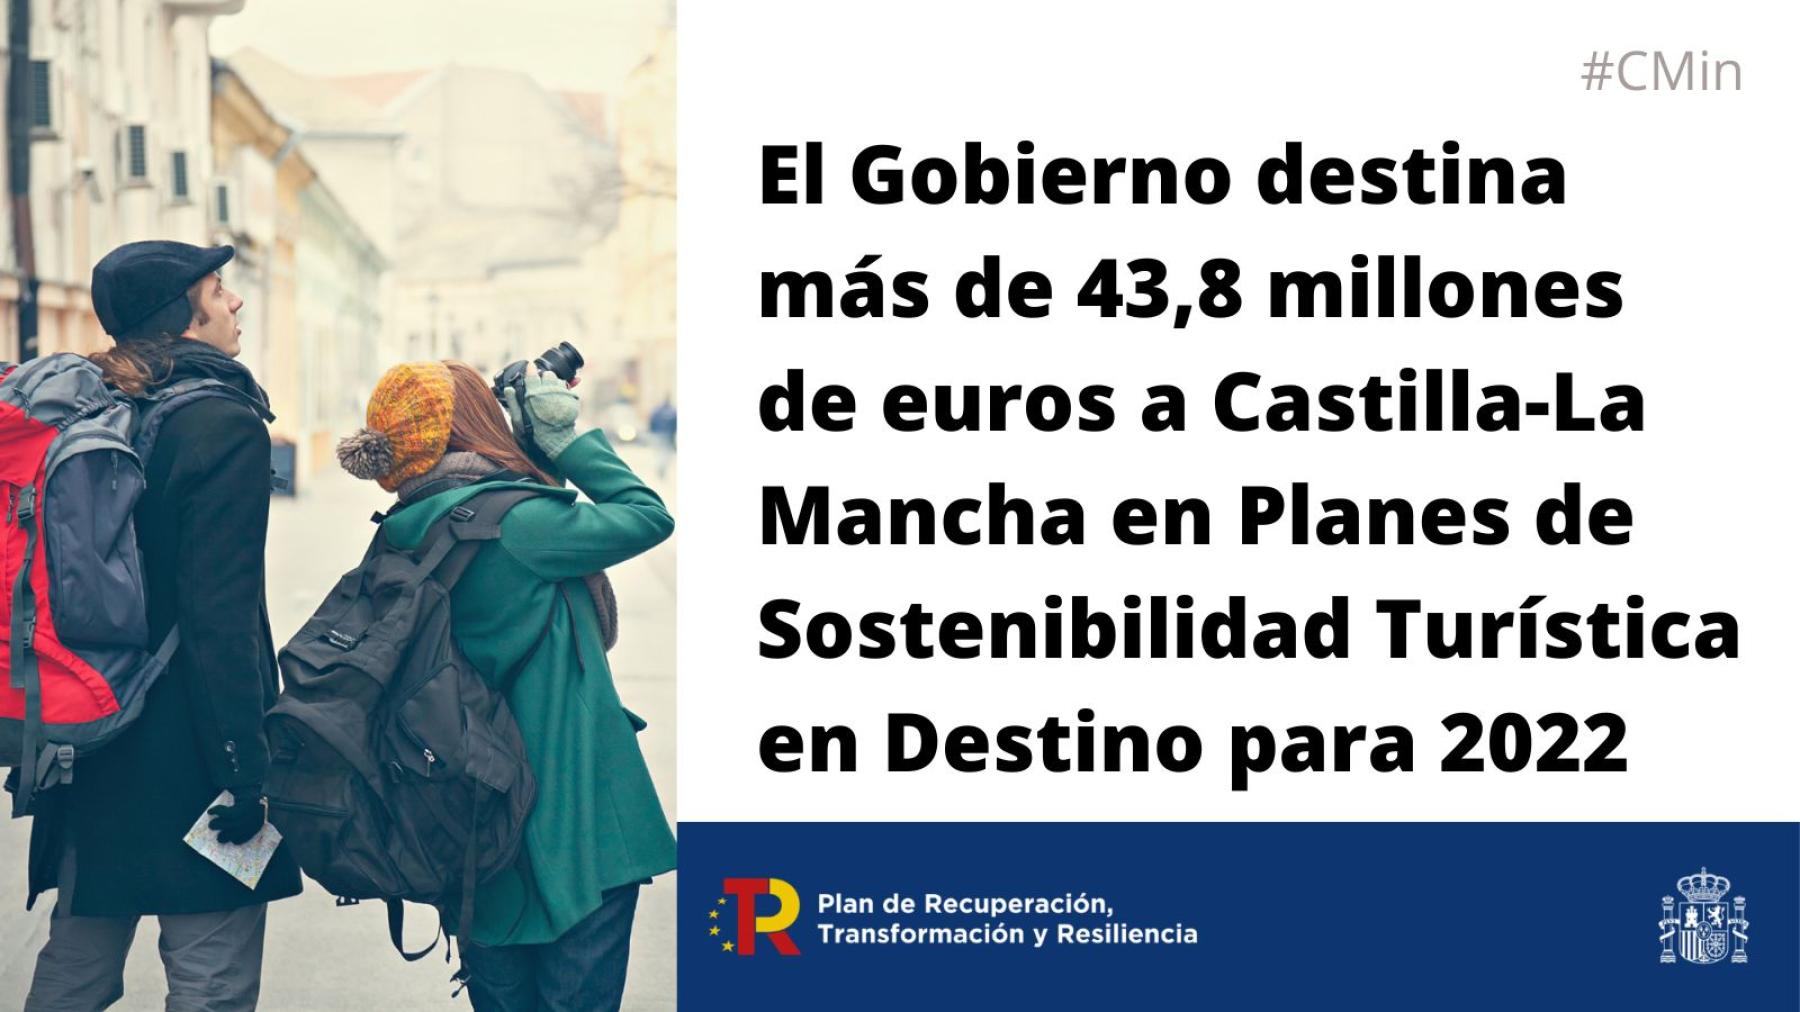 El Gobierno destina más de 43,8 millones de euros a Castilla-La Mancha en Planes de Sostenibilidad Turística en Destino para 2022